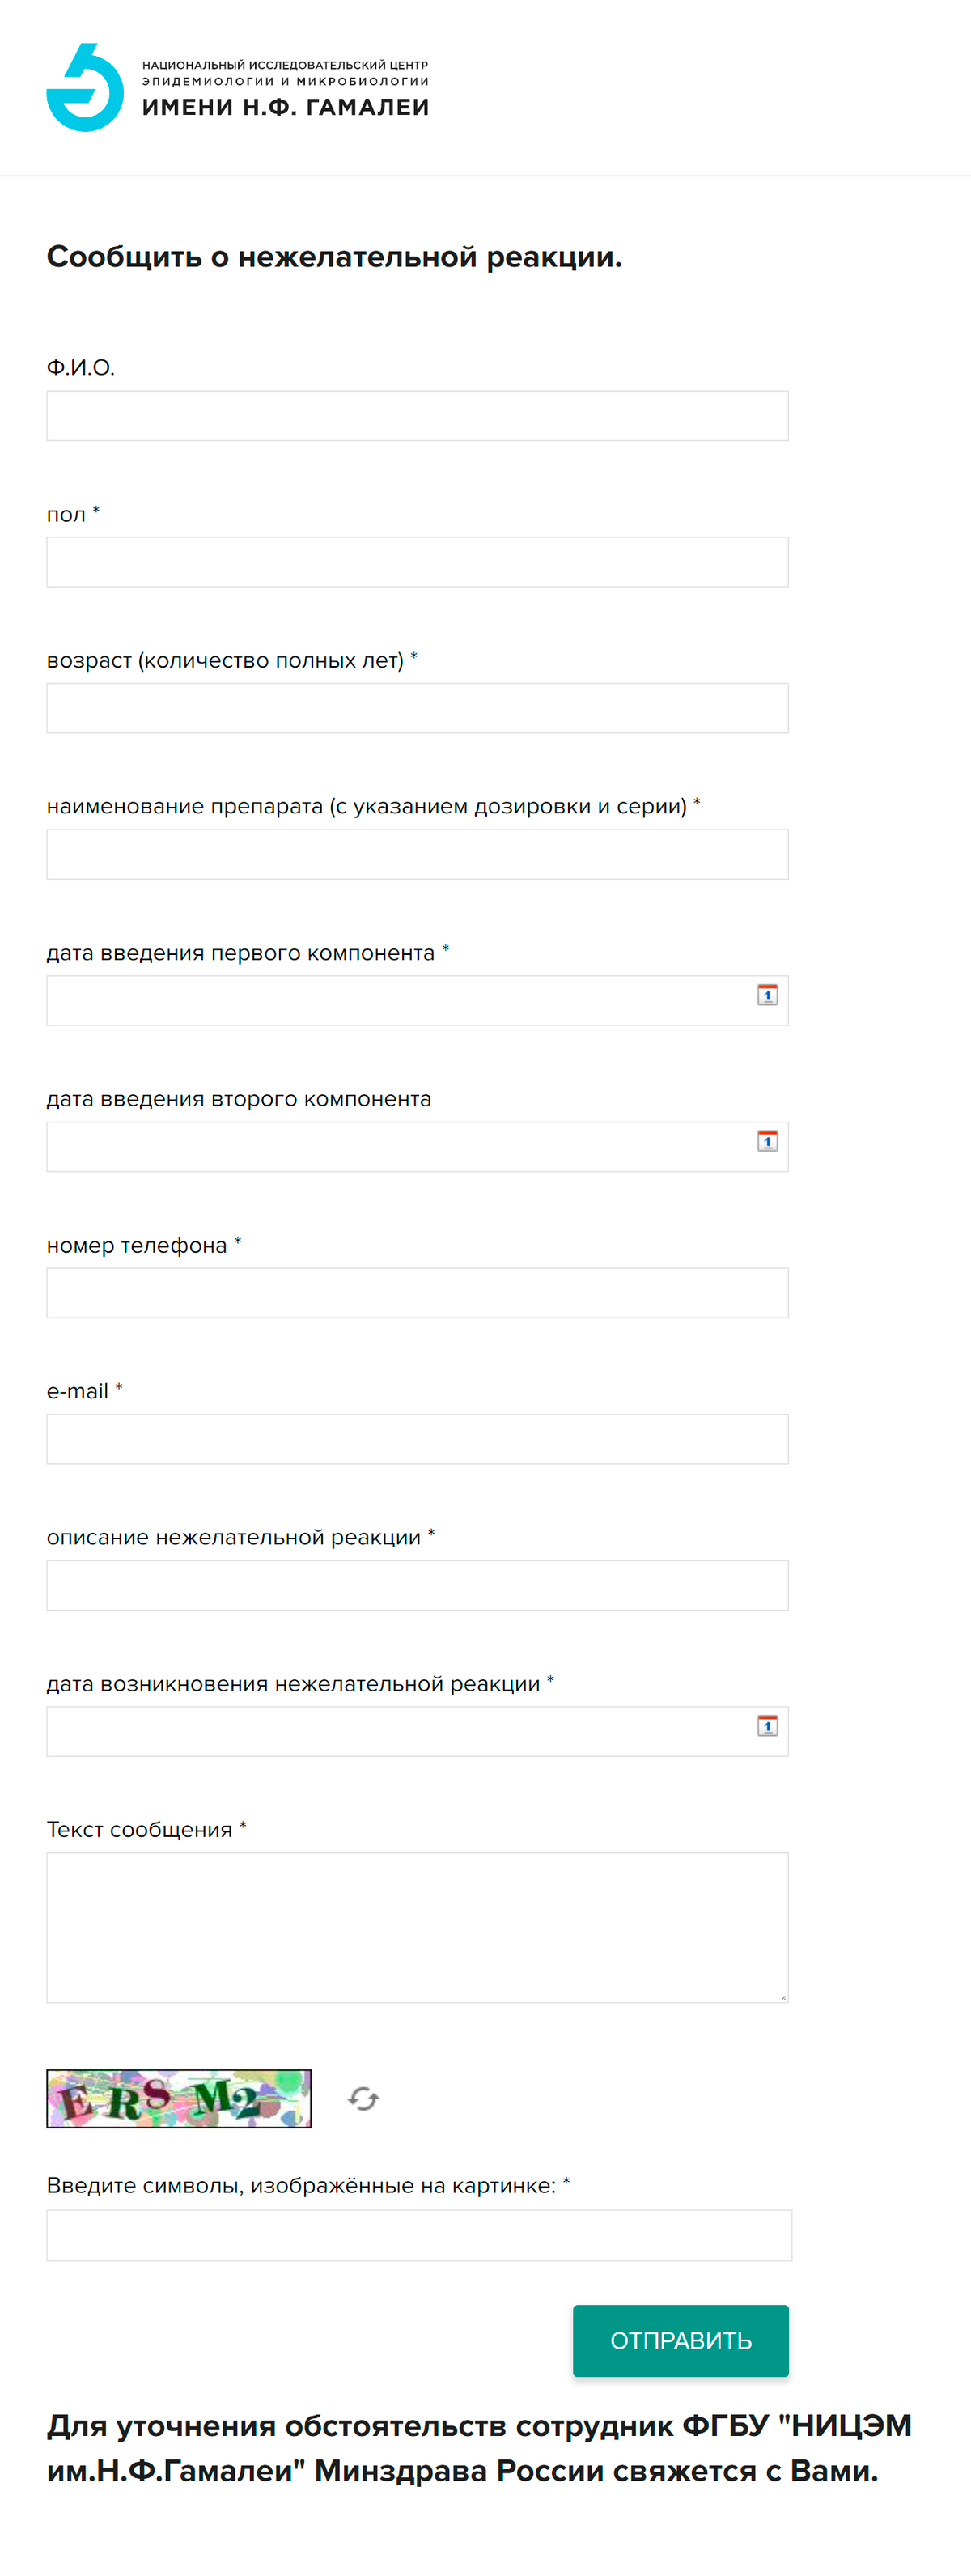 Анкета на сайте разработчика вакцины «Спутник&nbsp;V». Источник: НИЦЭМ им. Гамалеи